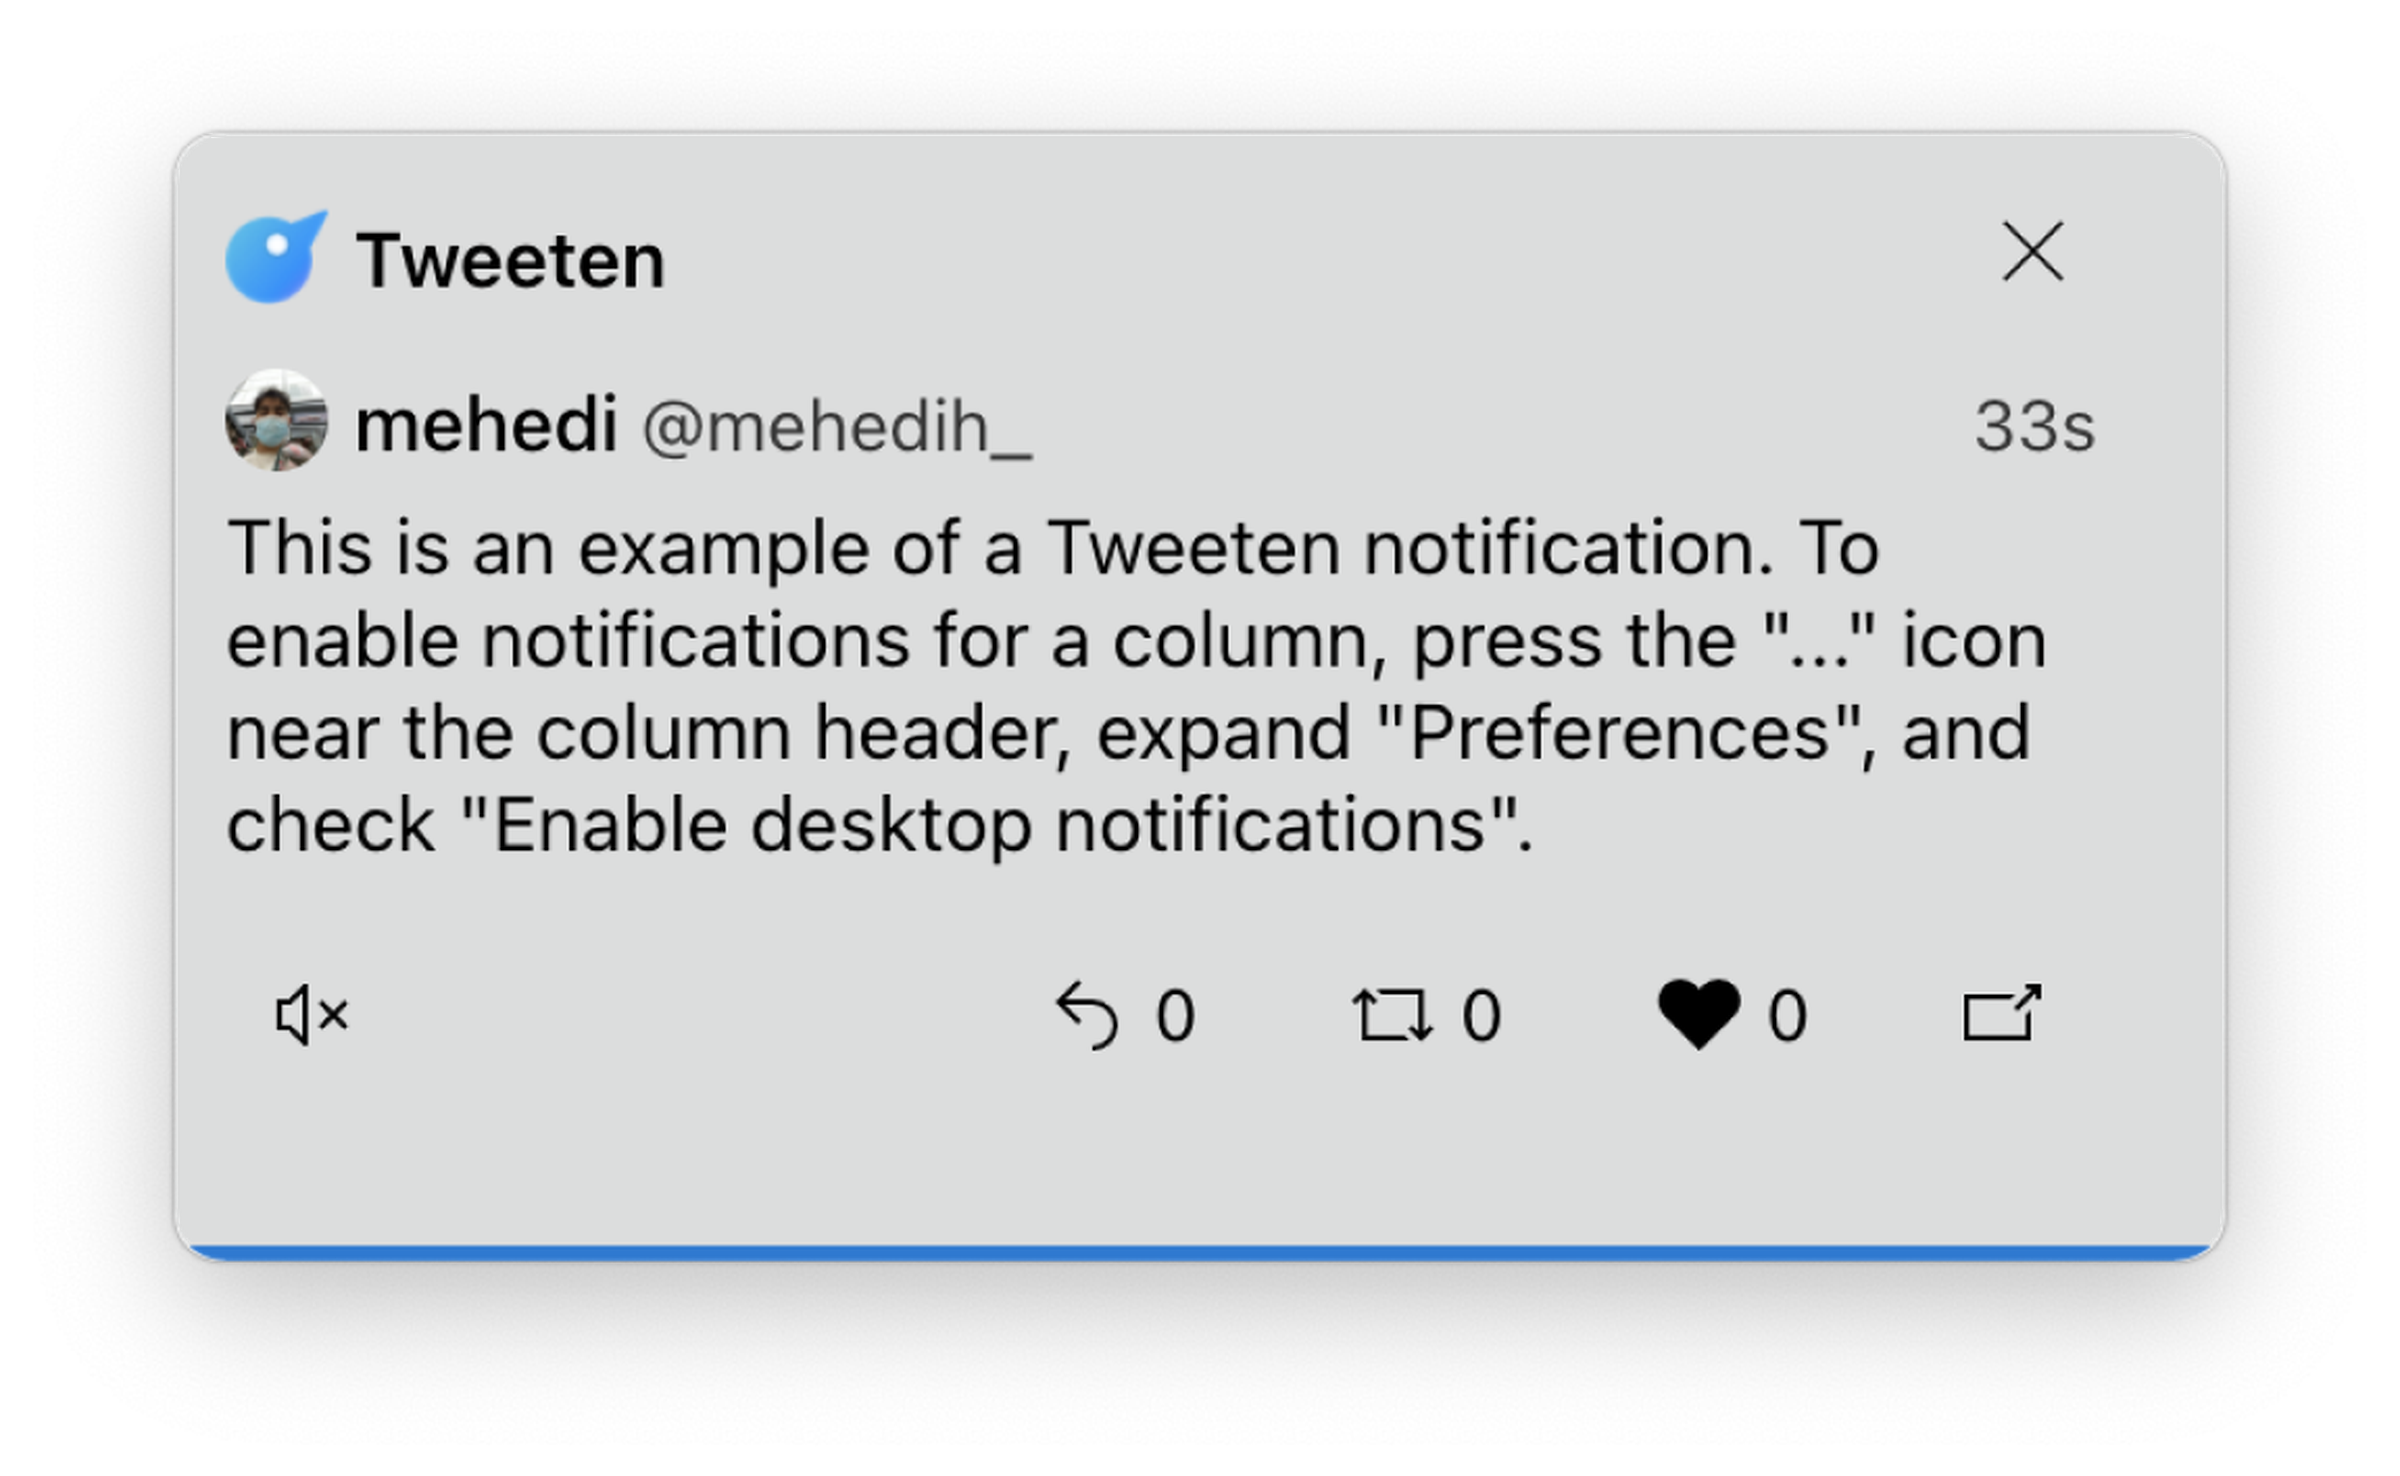 An example Tweeten notification.